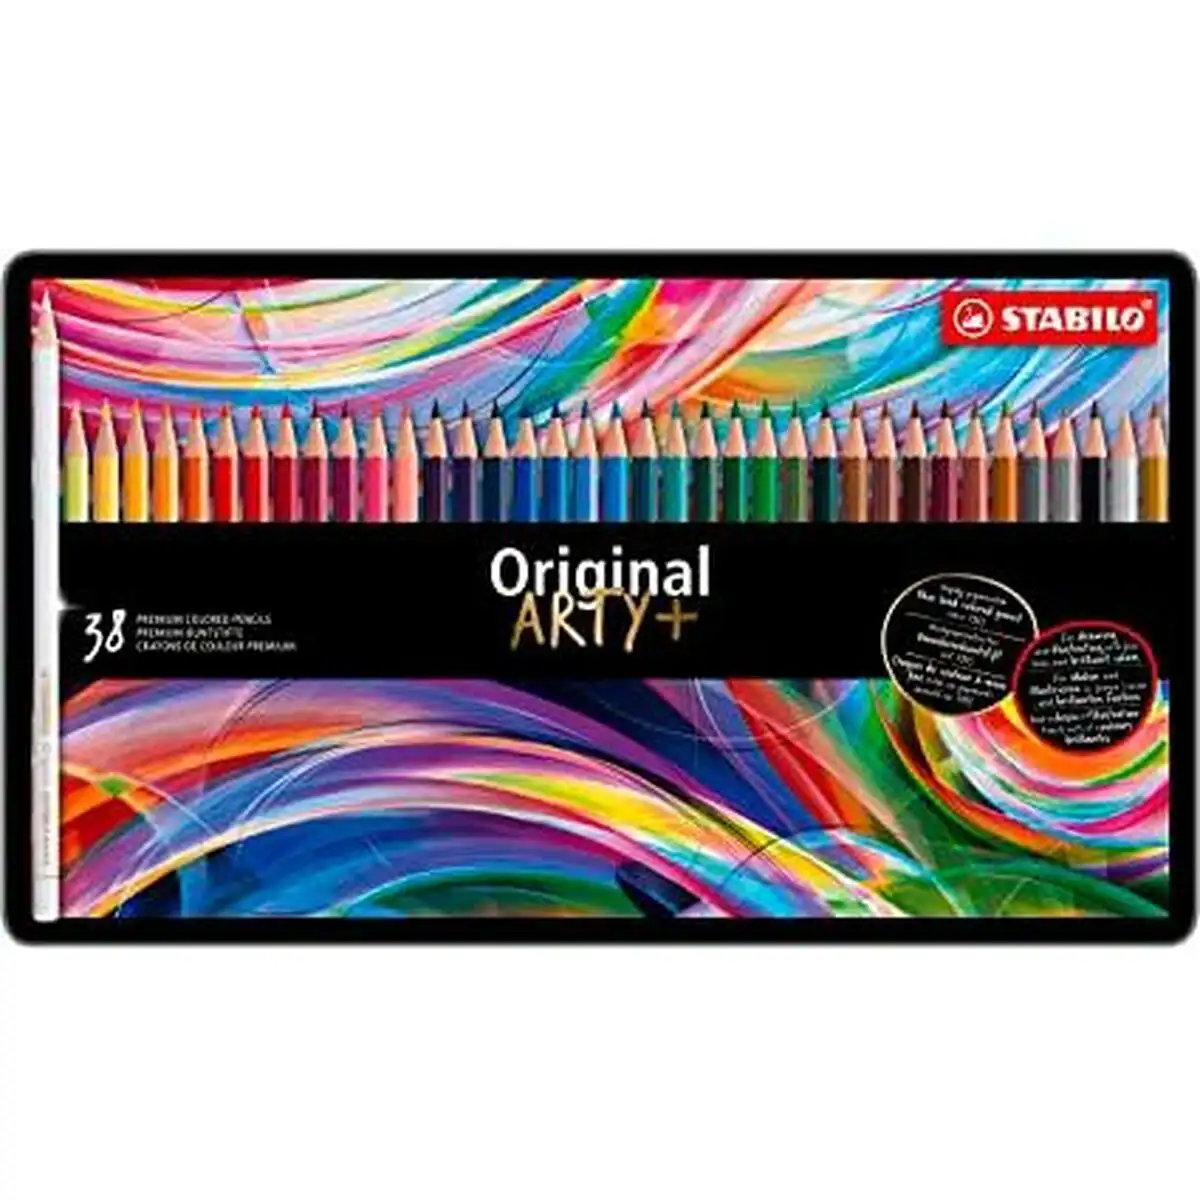 Crayons de couleur stabilo original arty multicouleur_7207. Bienvenue chez DIAYTAR SENEGAL - Où Chaque Détail Fait la Différence. Découvrez notre sélection méticuleuse et choisissez des articles qui répondent à vos exigences.